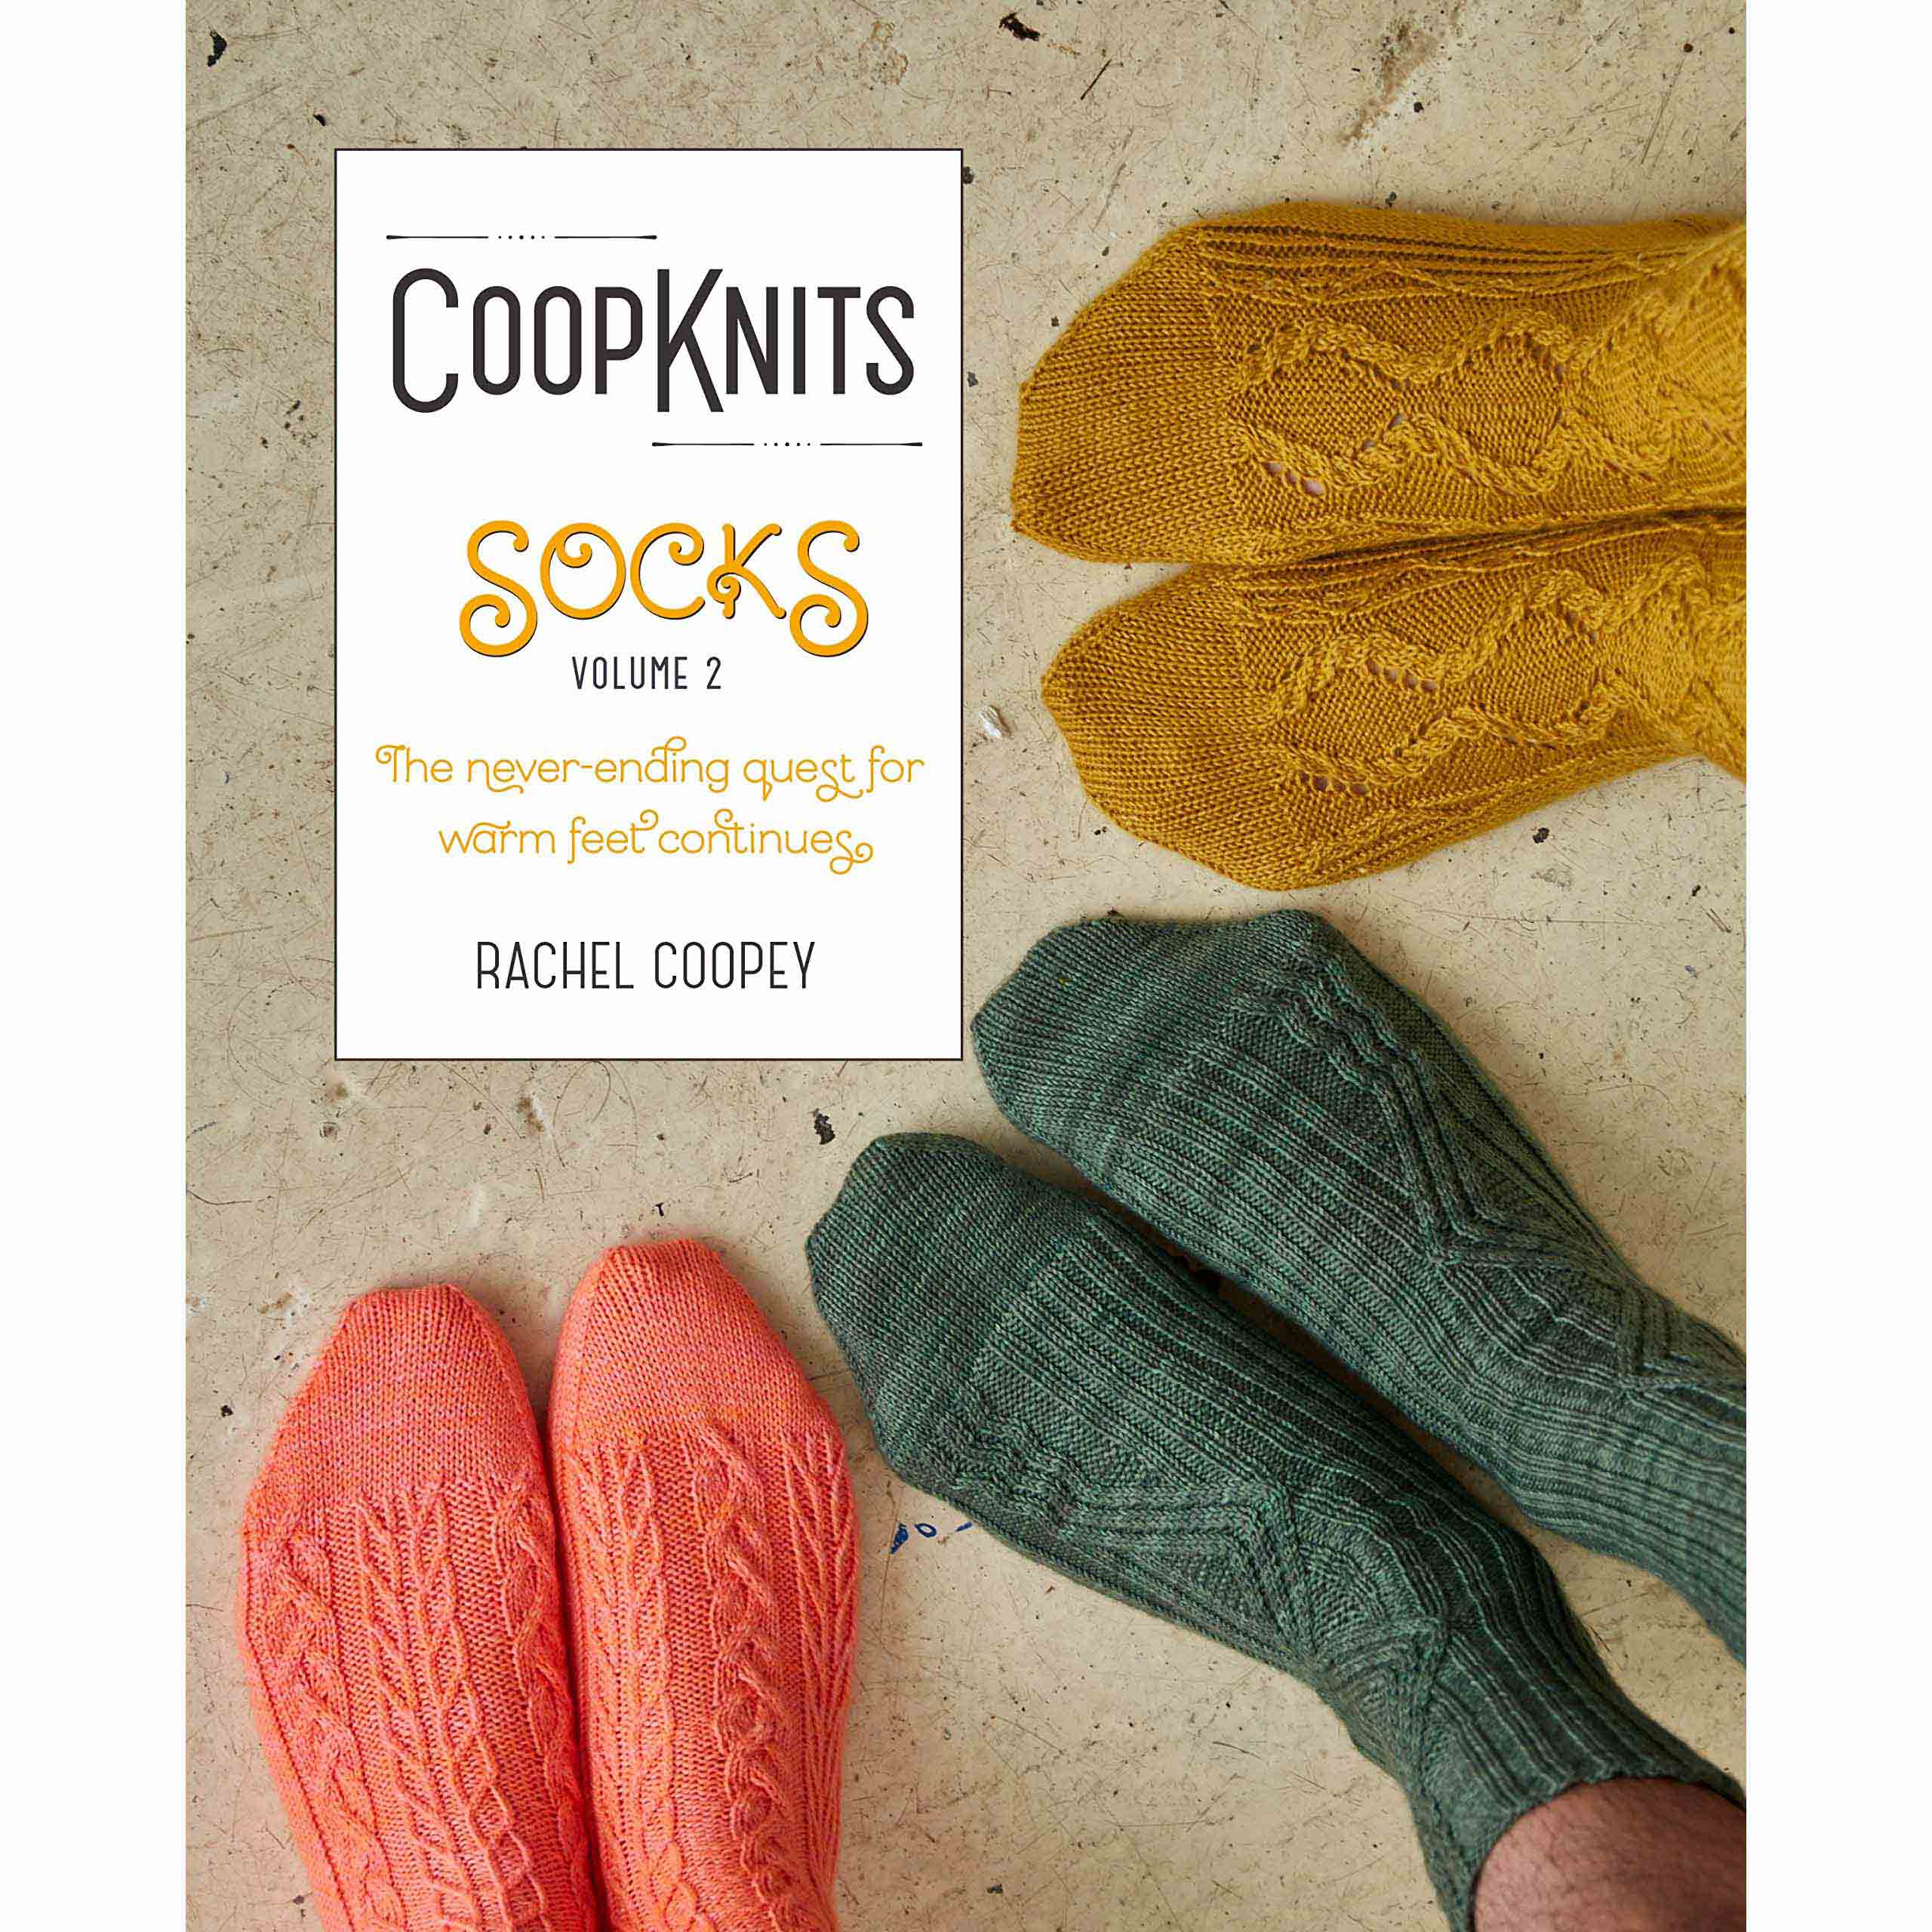 CoopKnits Socks Volume 2, by Rachel Coopey